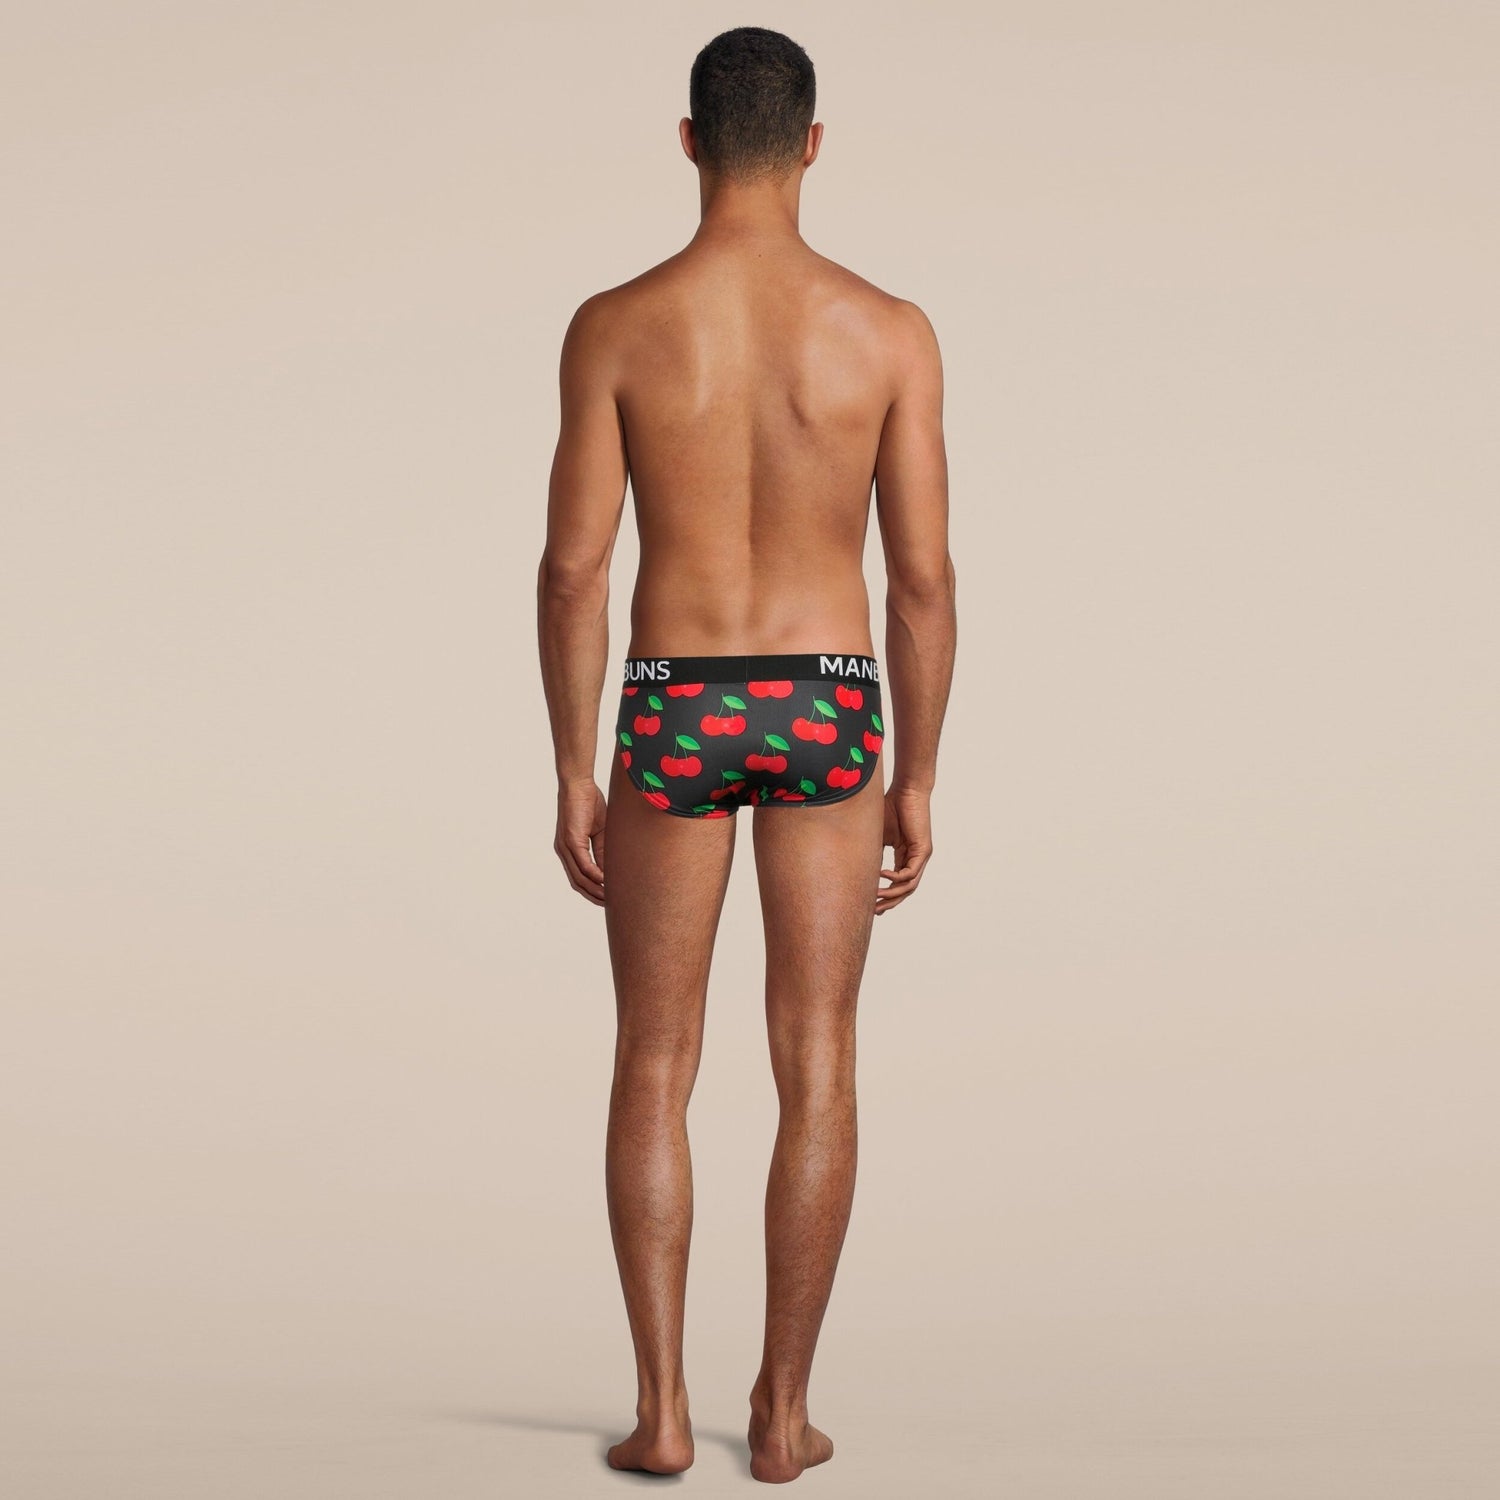 Men's Fun Novelty Cherry Print Briefs Underwear – MANBUNS